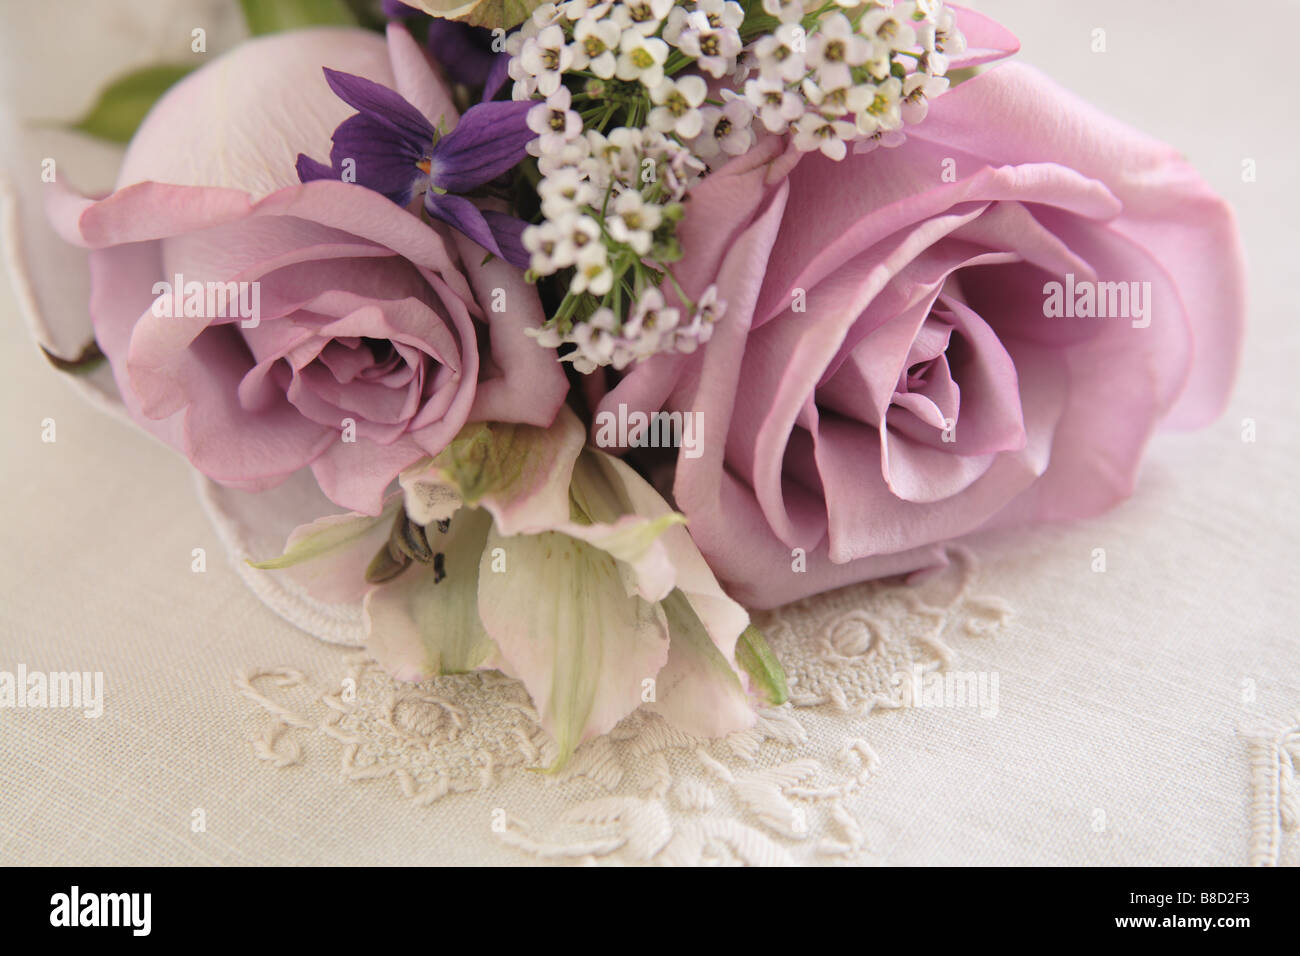 De couleur lavande avec des roses violettes, l'alstroemeria et alyssum sur fleurs brodées Banque D'Images